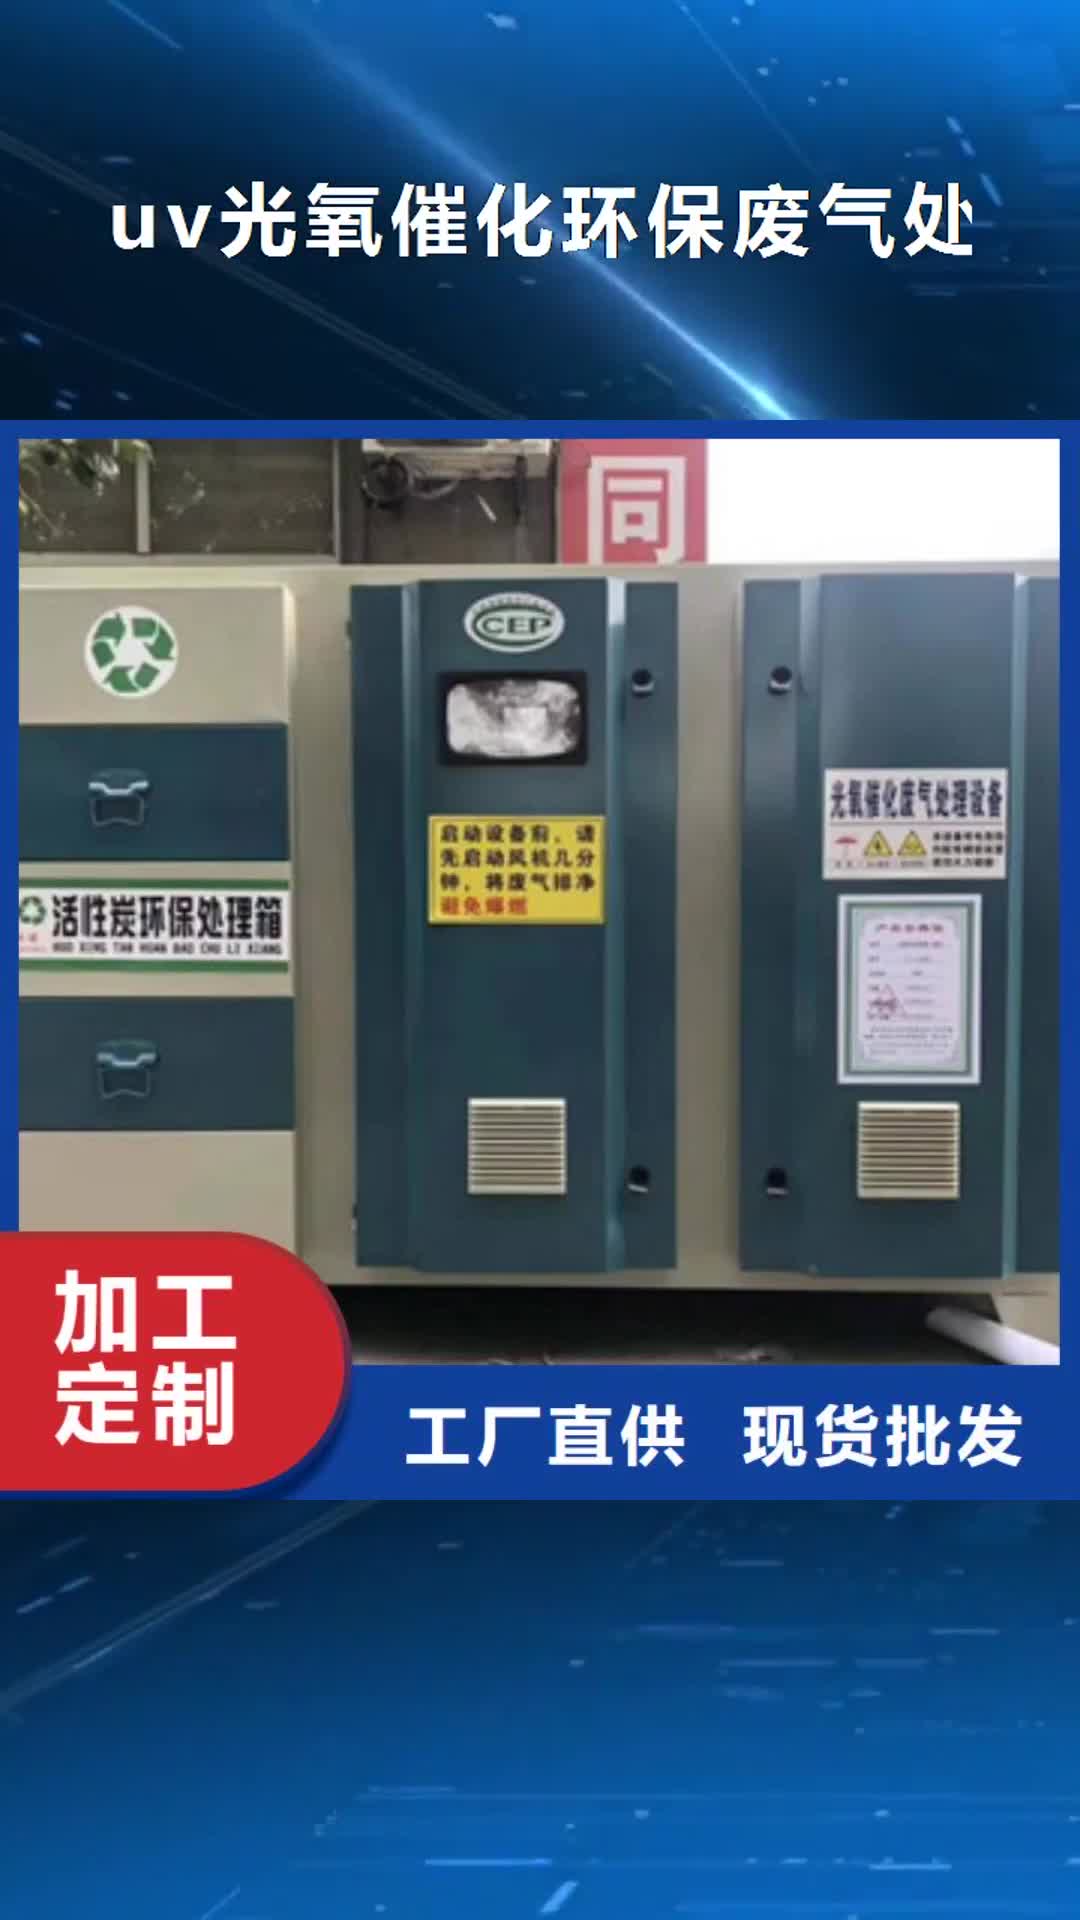 潍坊【uv光氧催化环保废气处理设备】- 等离子环保废气处理设备长期供应